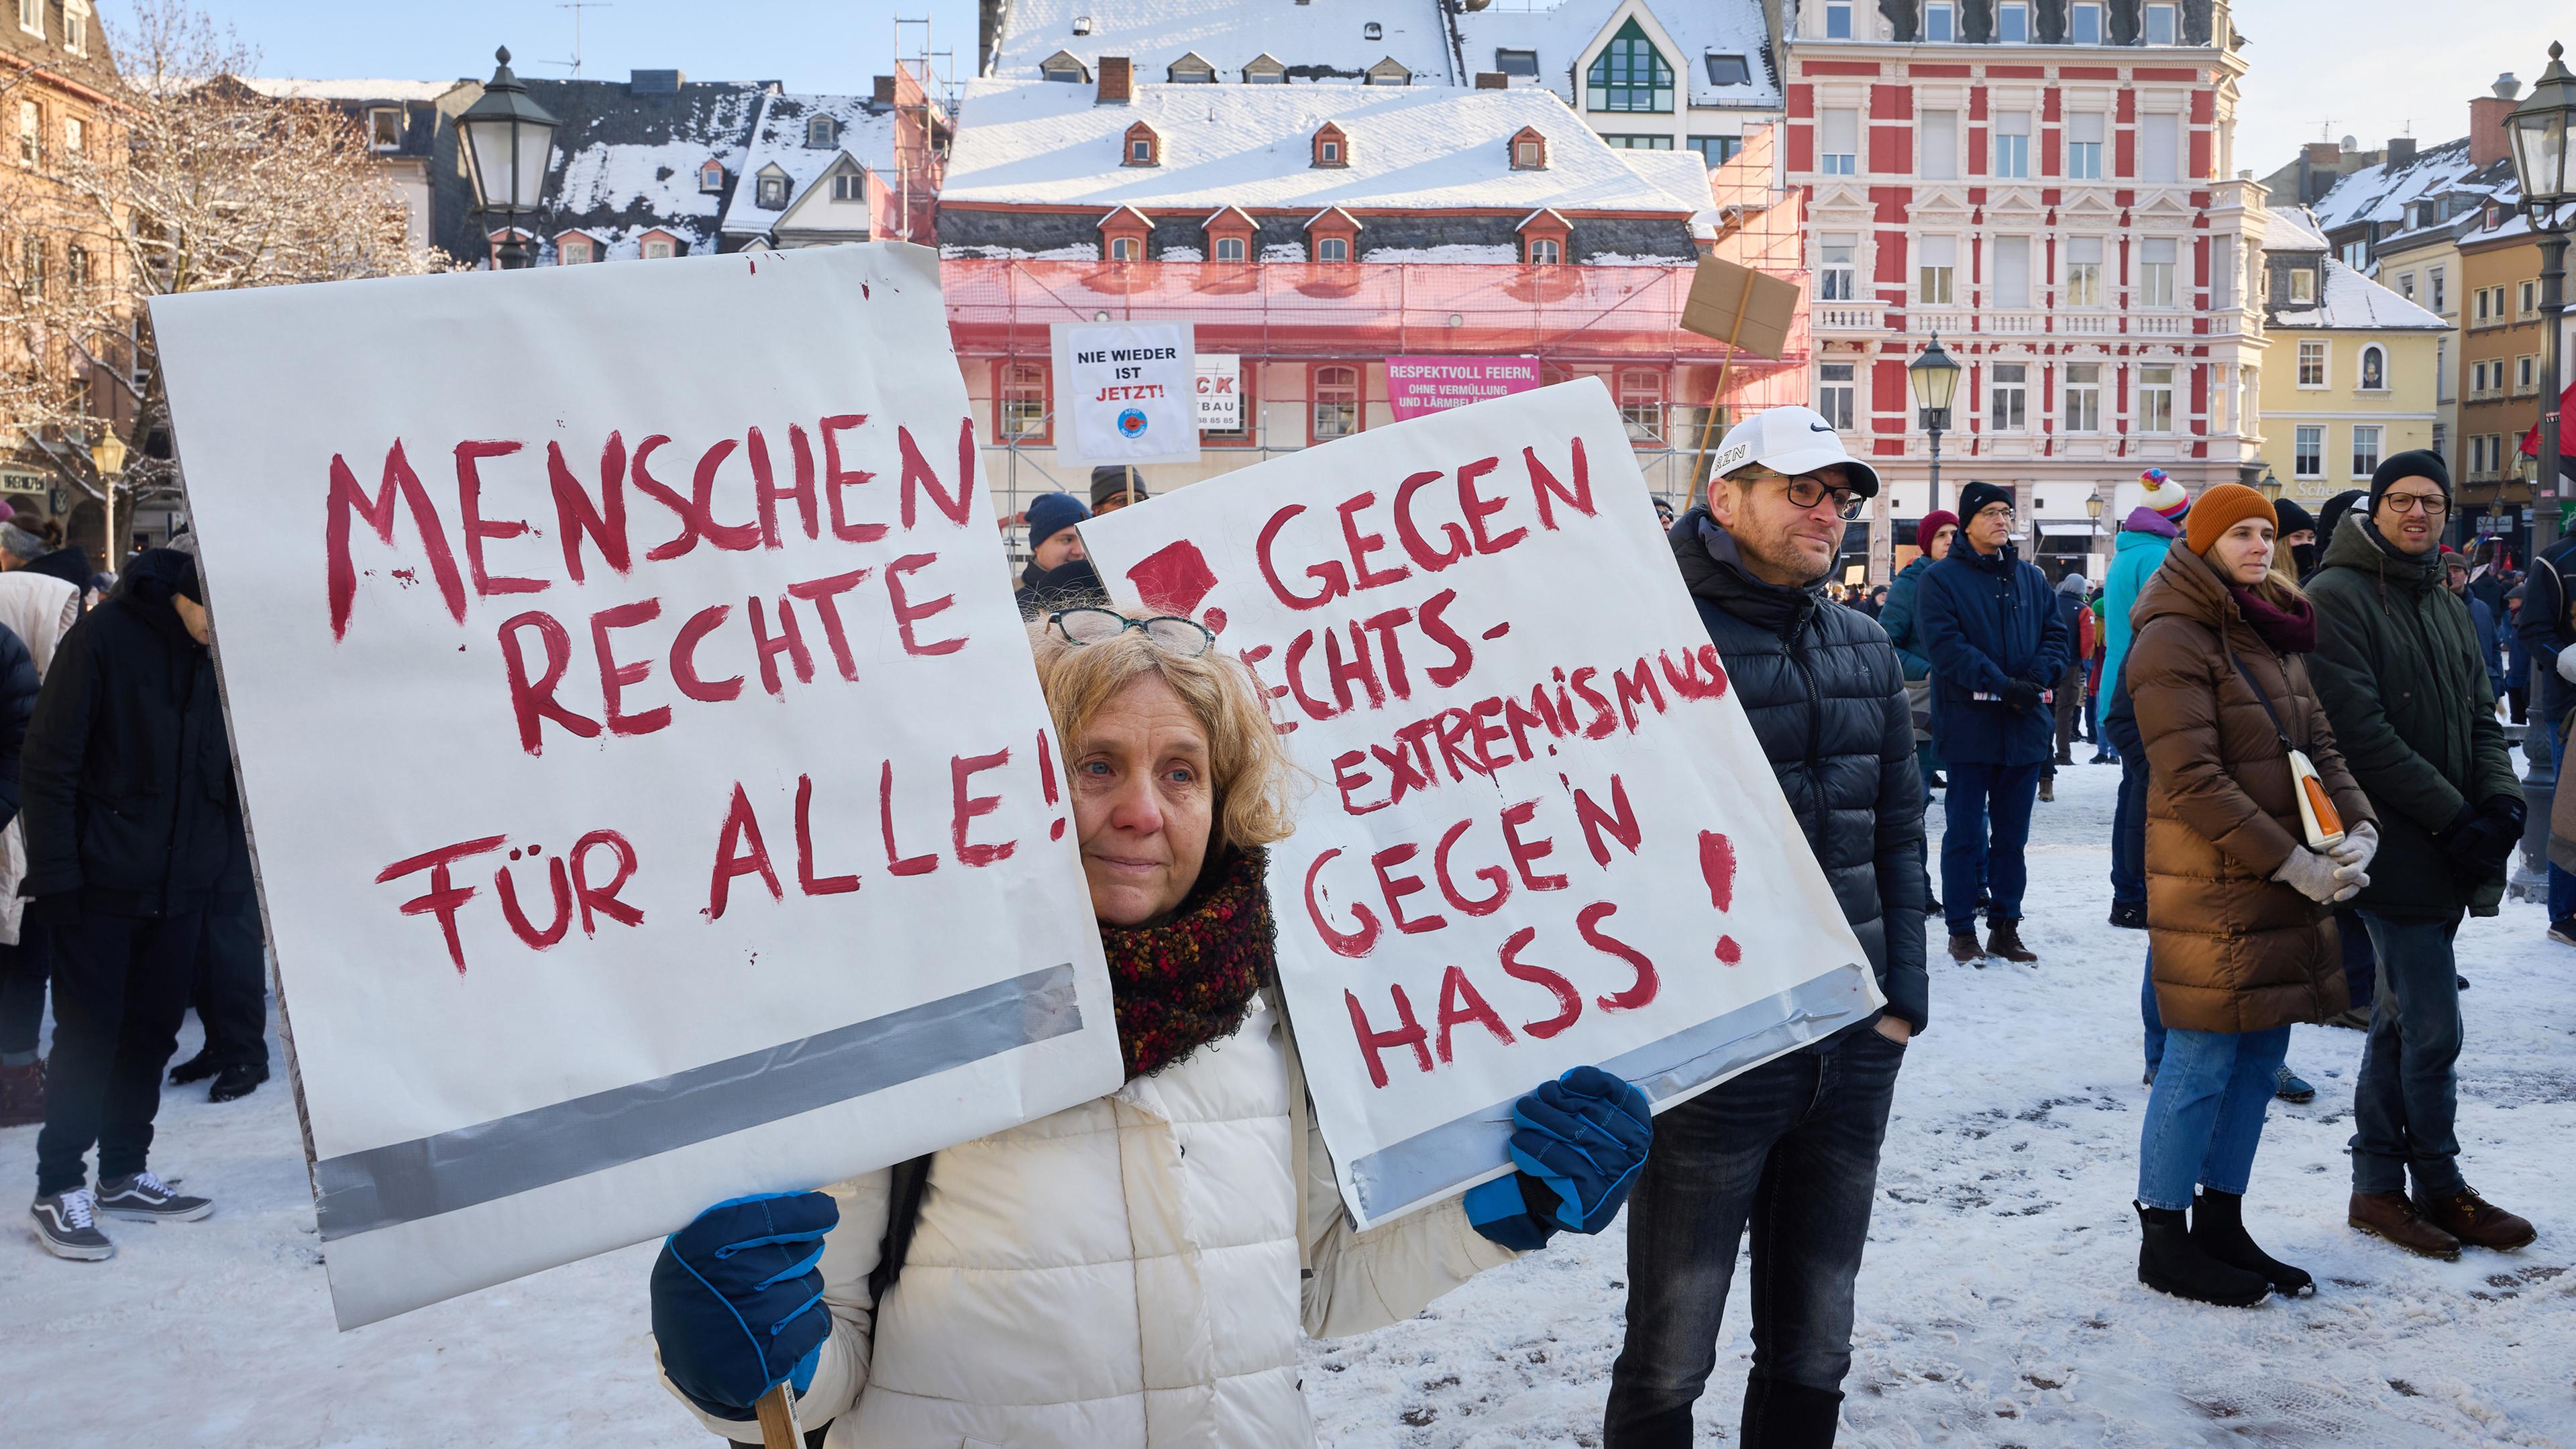  "Menschenrechte für Alle" und "gegen Rechtsextremismus, gegen Hass!" ist auf den beiden Schildern zu lesen, die eine Frau bei einer Demonstration in Koblenz gegen Rechts hält.